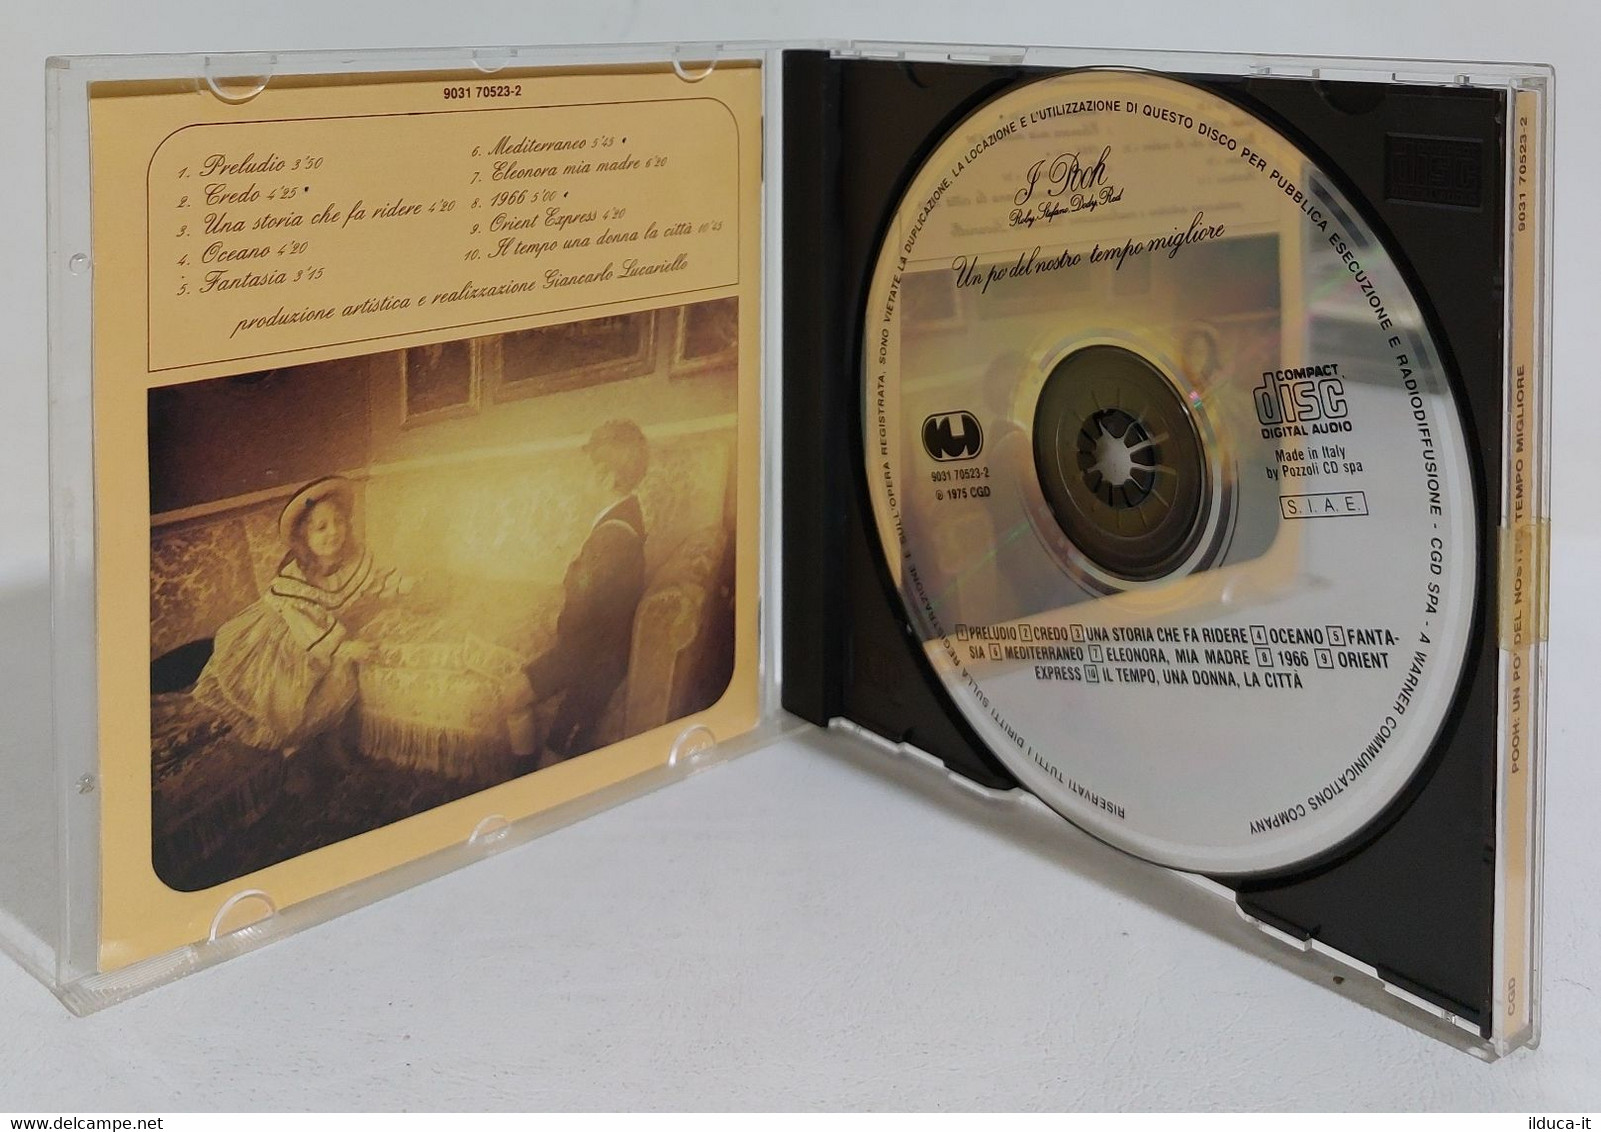 I107654 CD - Pooh - Un Pò Del Nostro Tempo Migliore - CGD - Sonstige - Italienische Musik